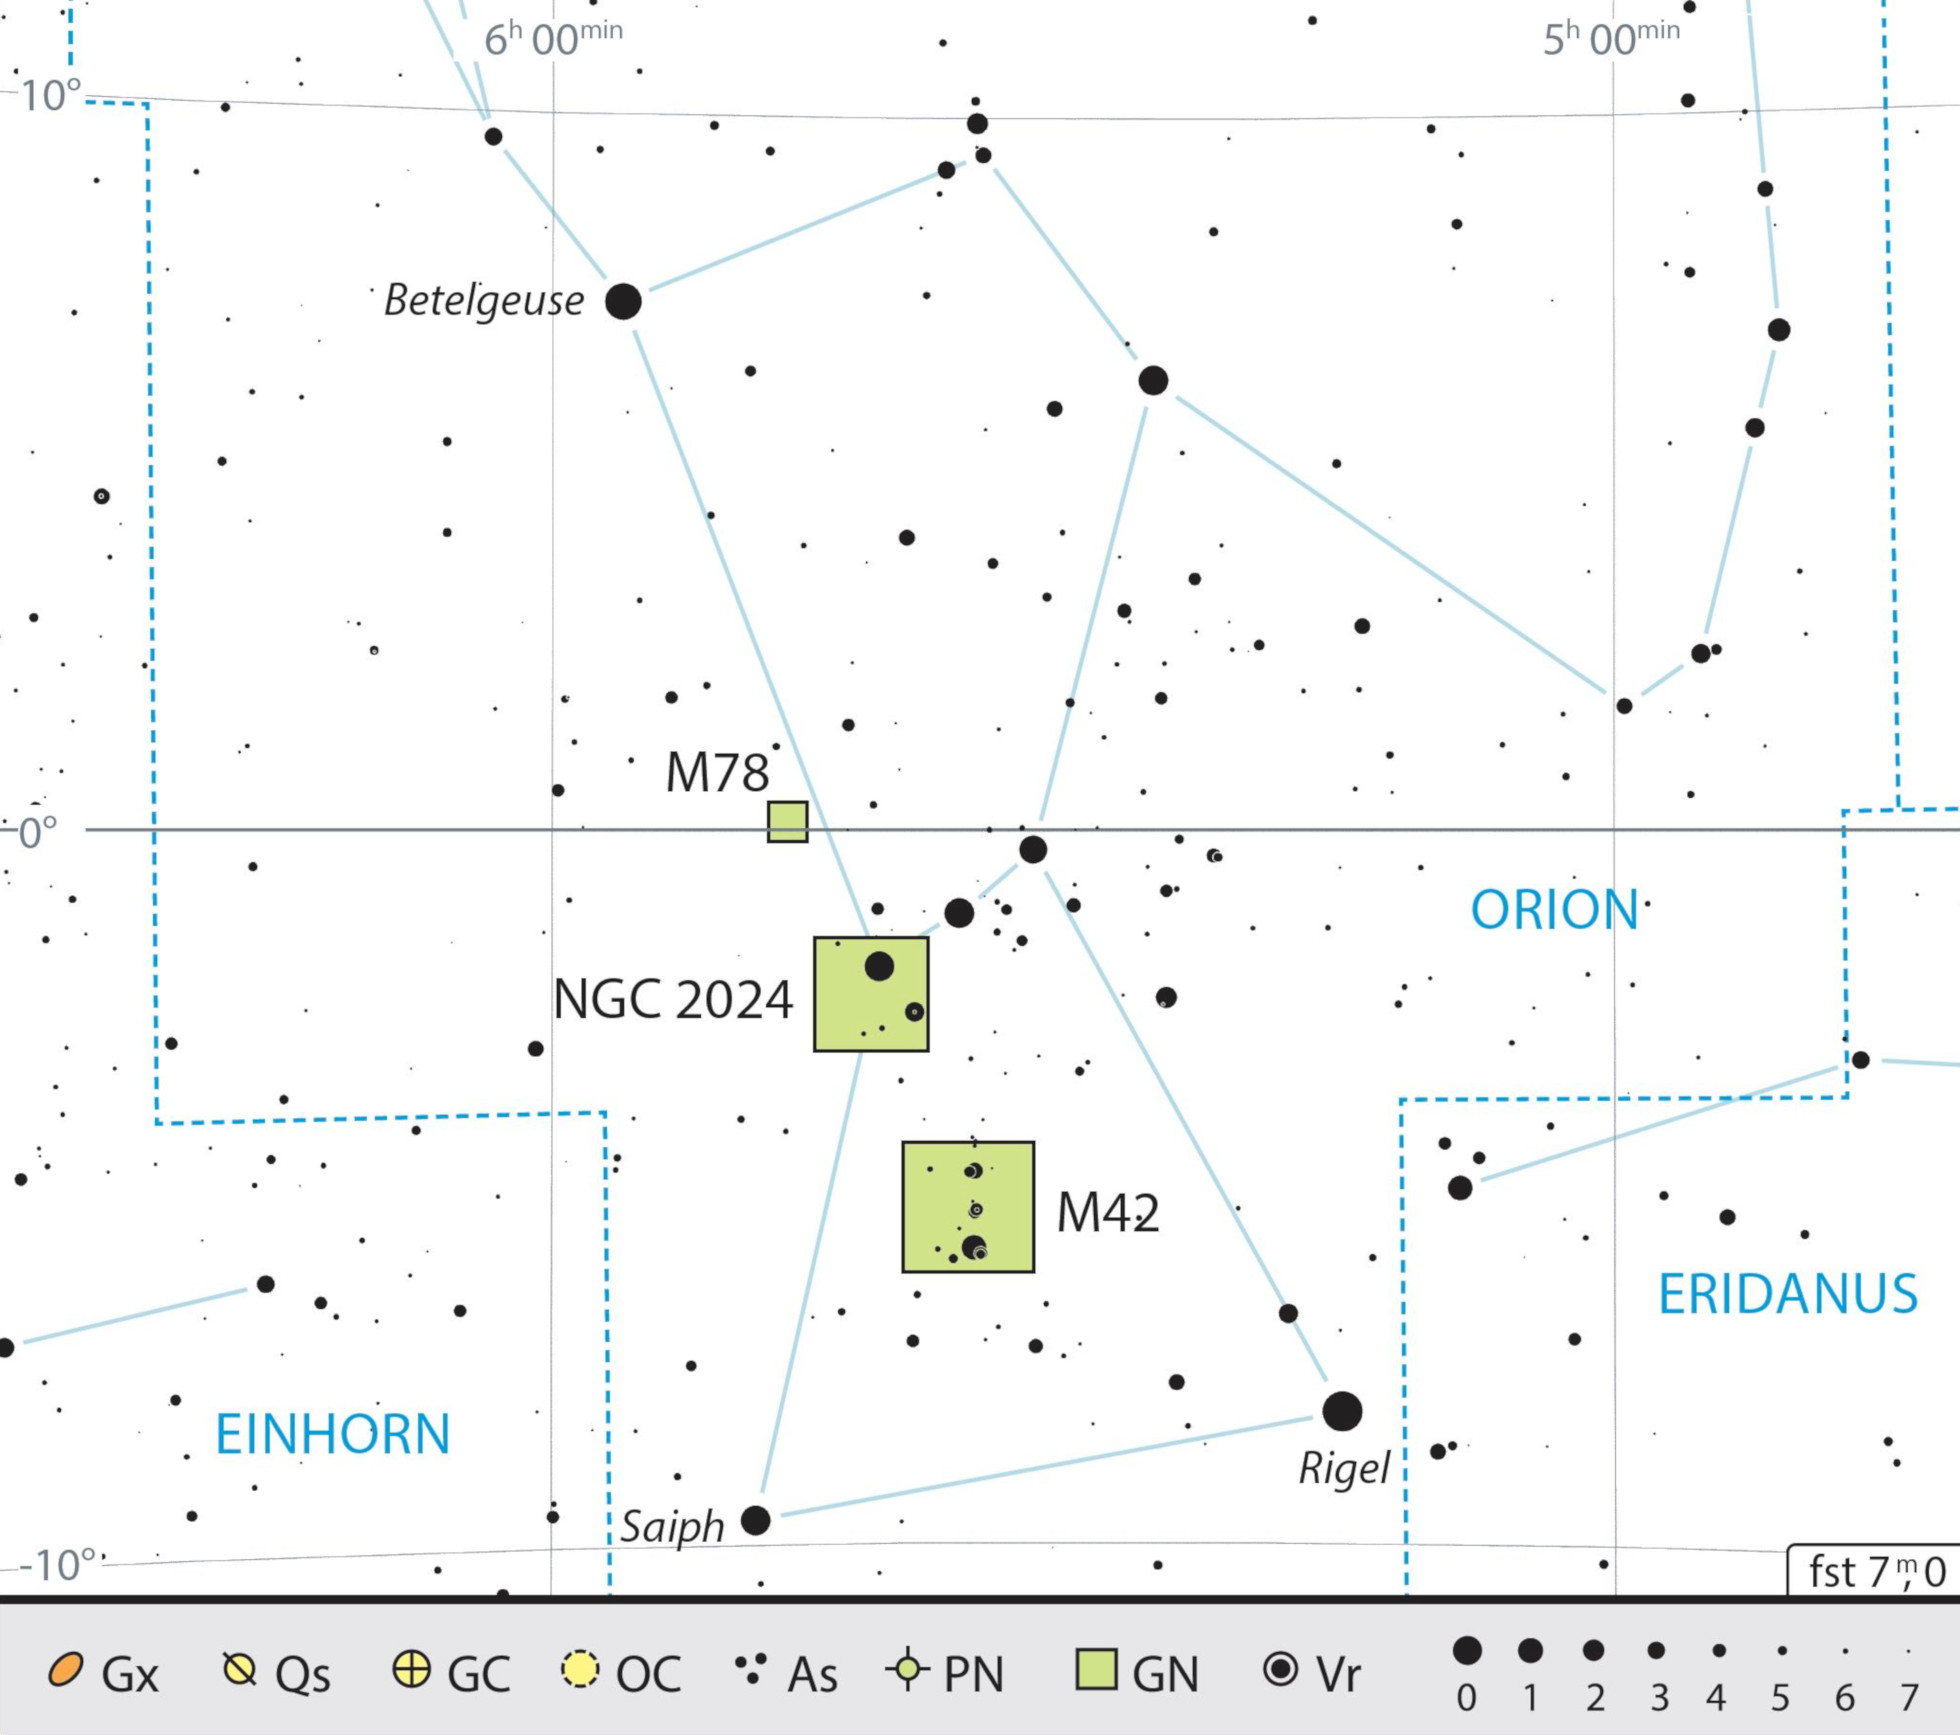 Mapa de la constelación de Orión y consejos de observación. J. Scholten